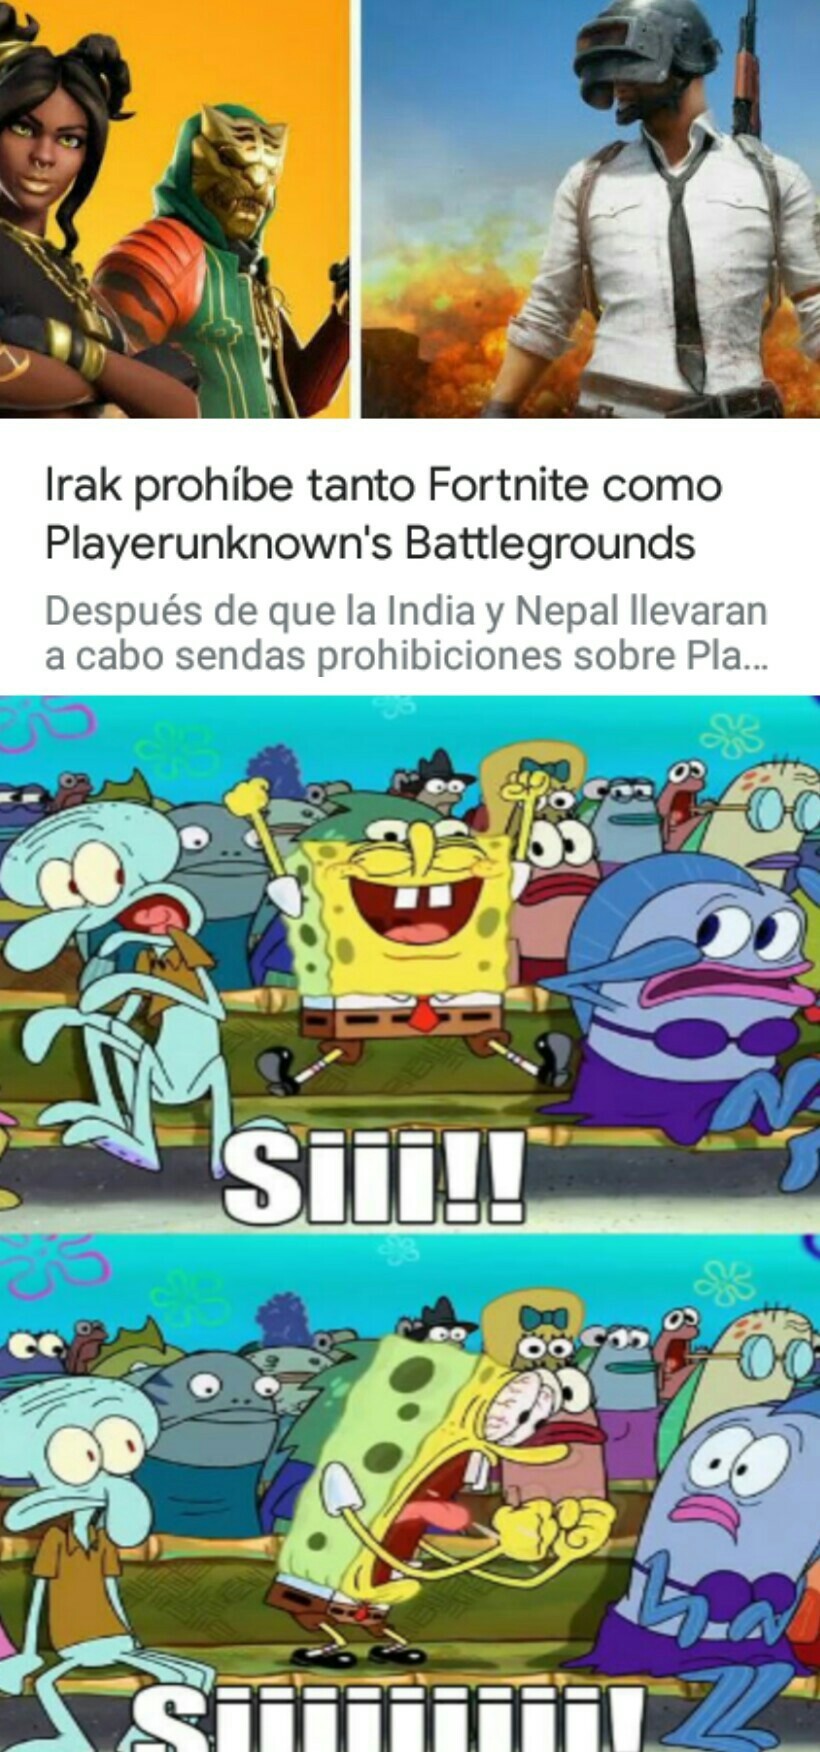 Viva irak - meme